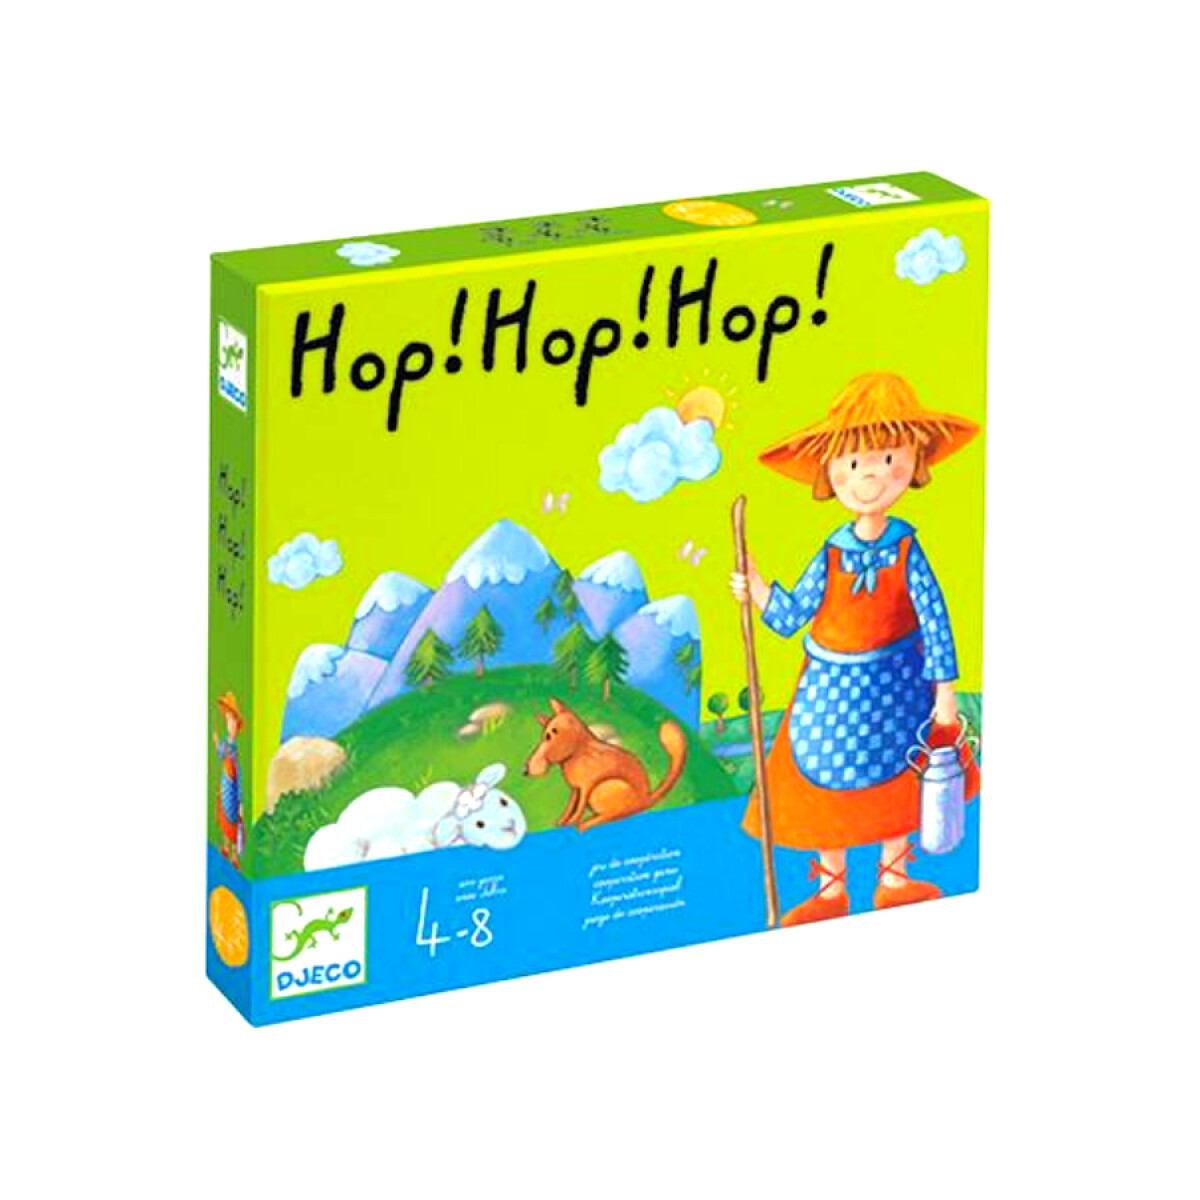 Juego Cooperativo Hop! Hop! Hop! by Djeco 